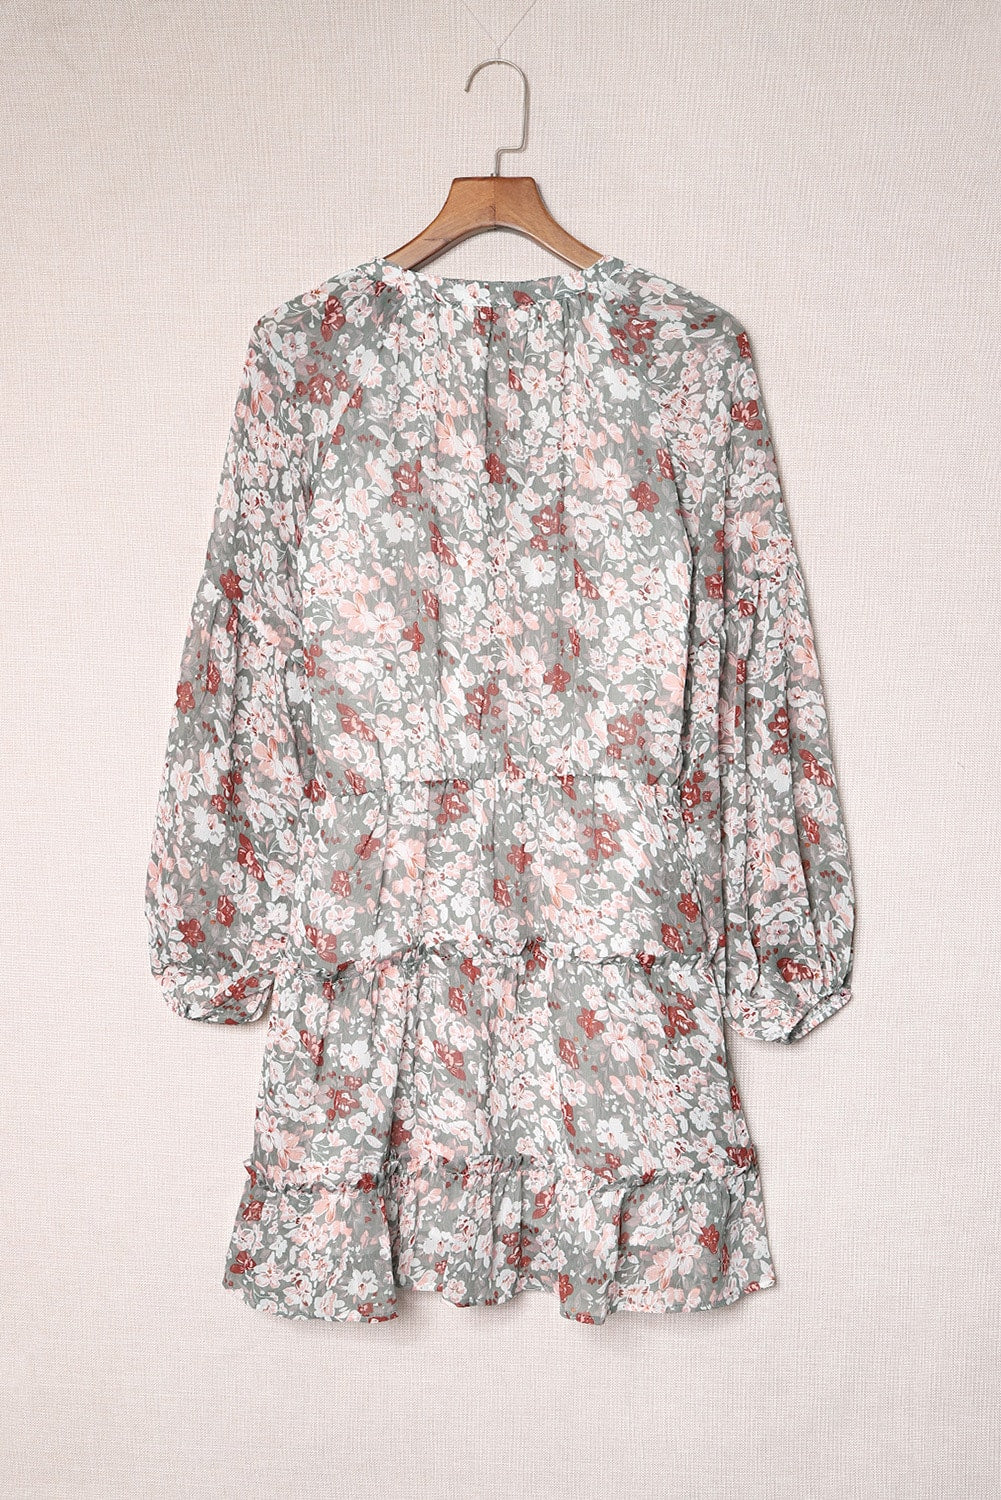 Multicolor V Neck Puff Sleeves Floral Tunic Dress Floral Dresses JT's Designer Fashion